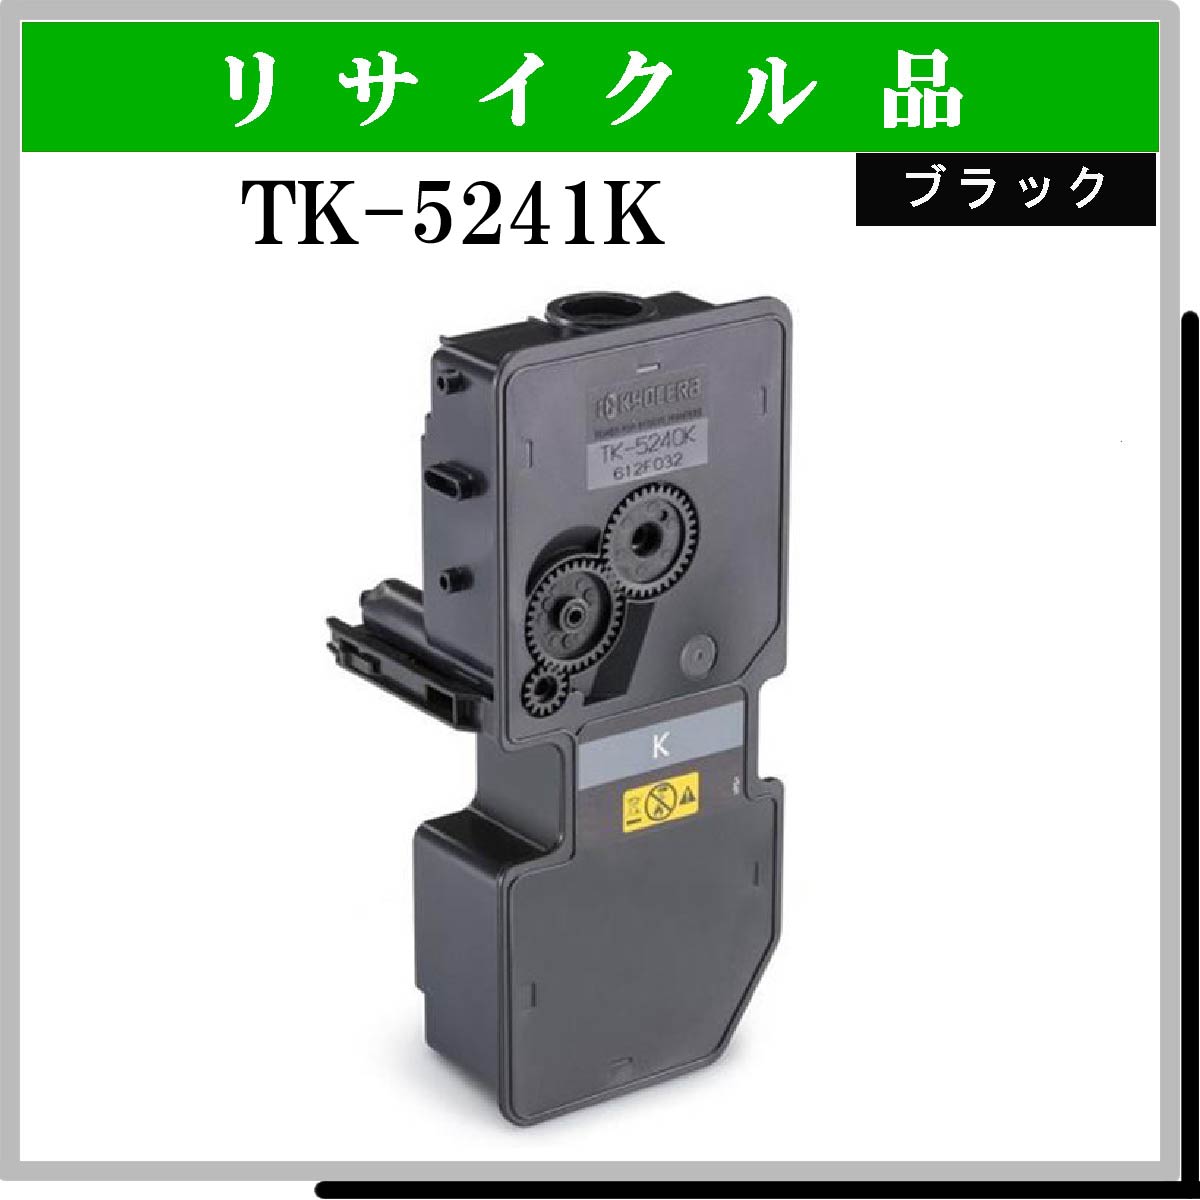 TK-5241K